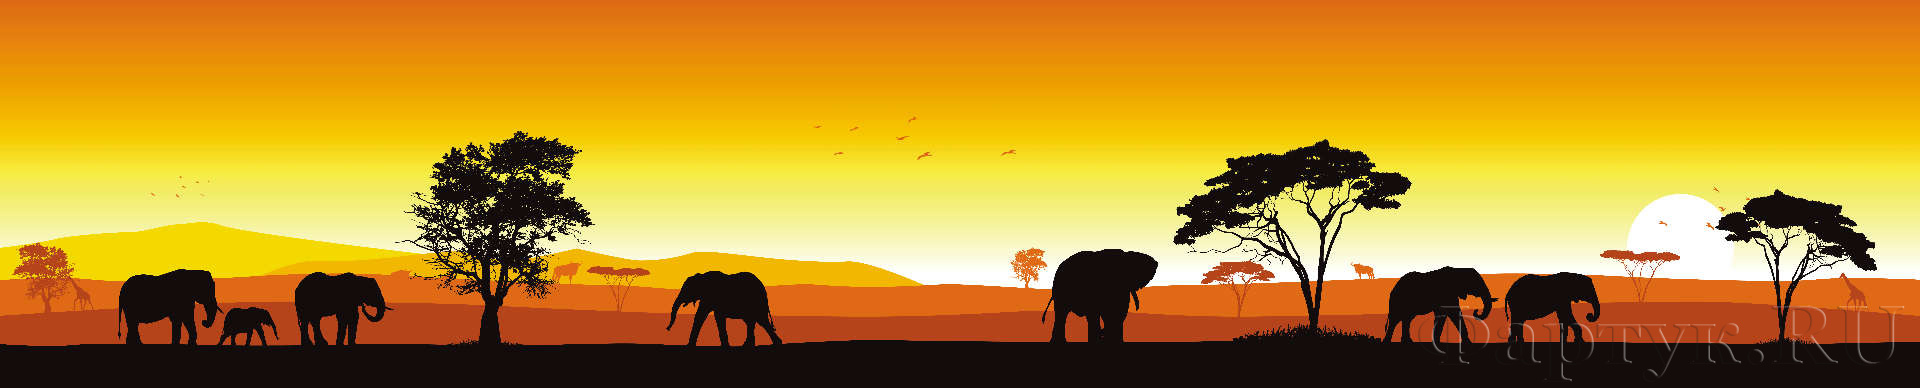 Сафари, слоны на закате